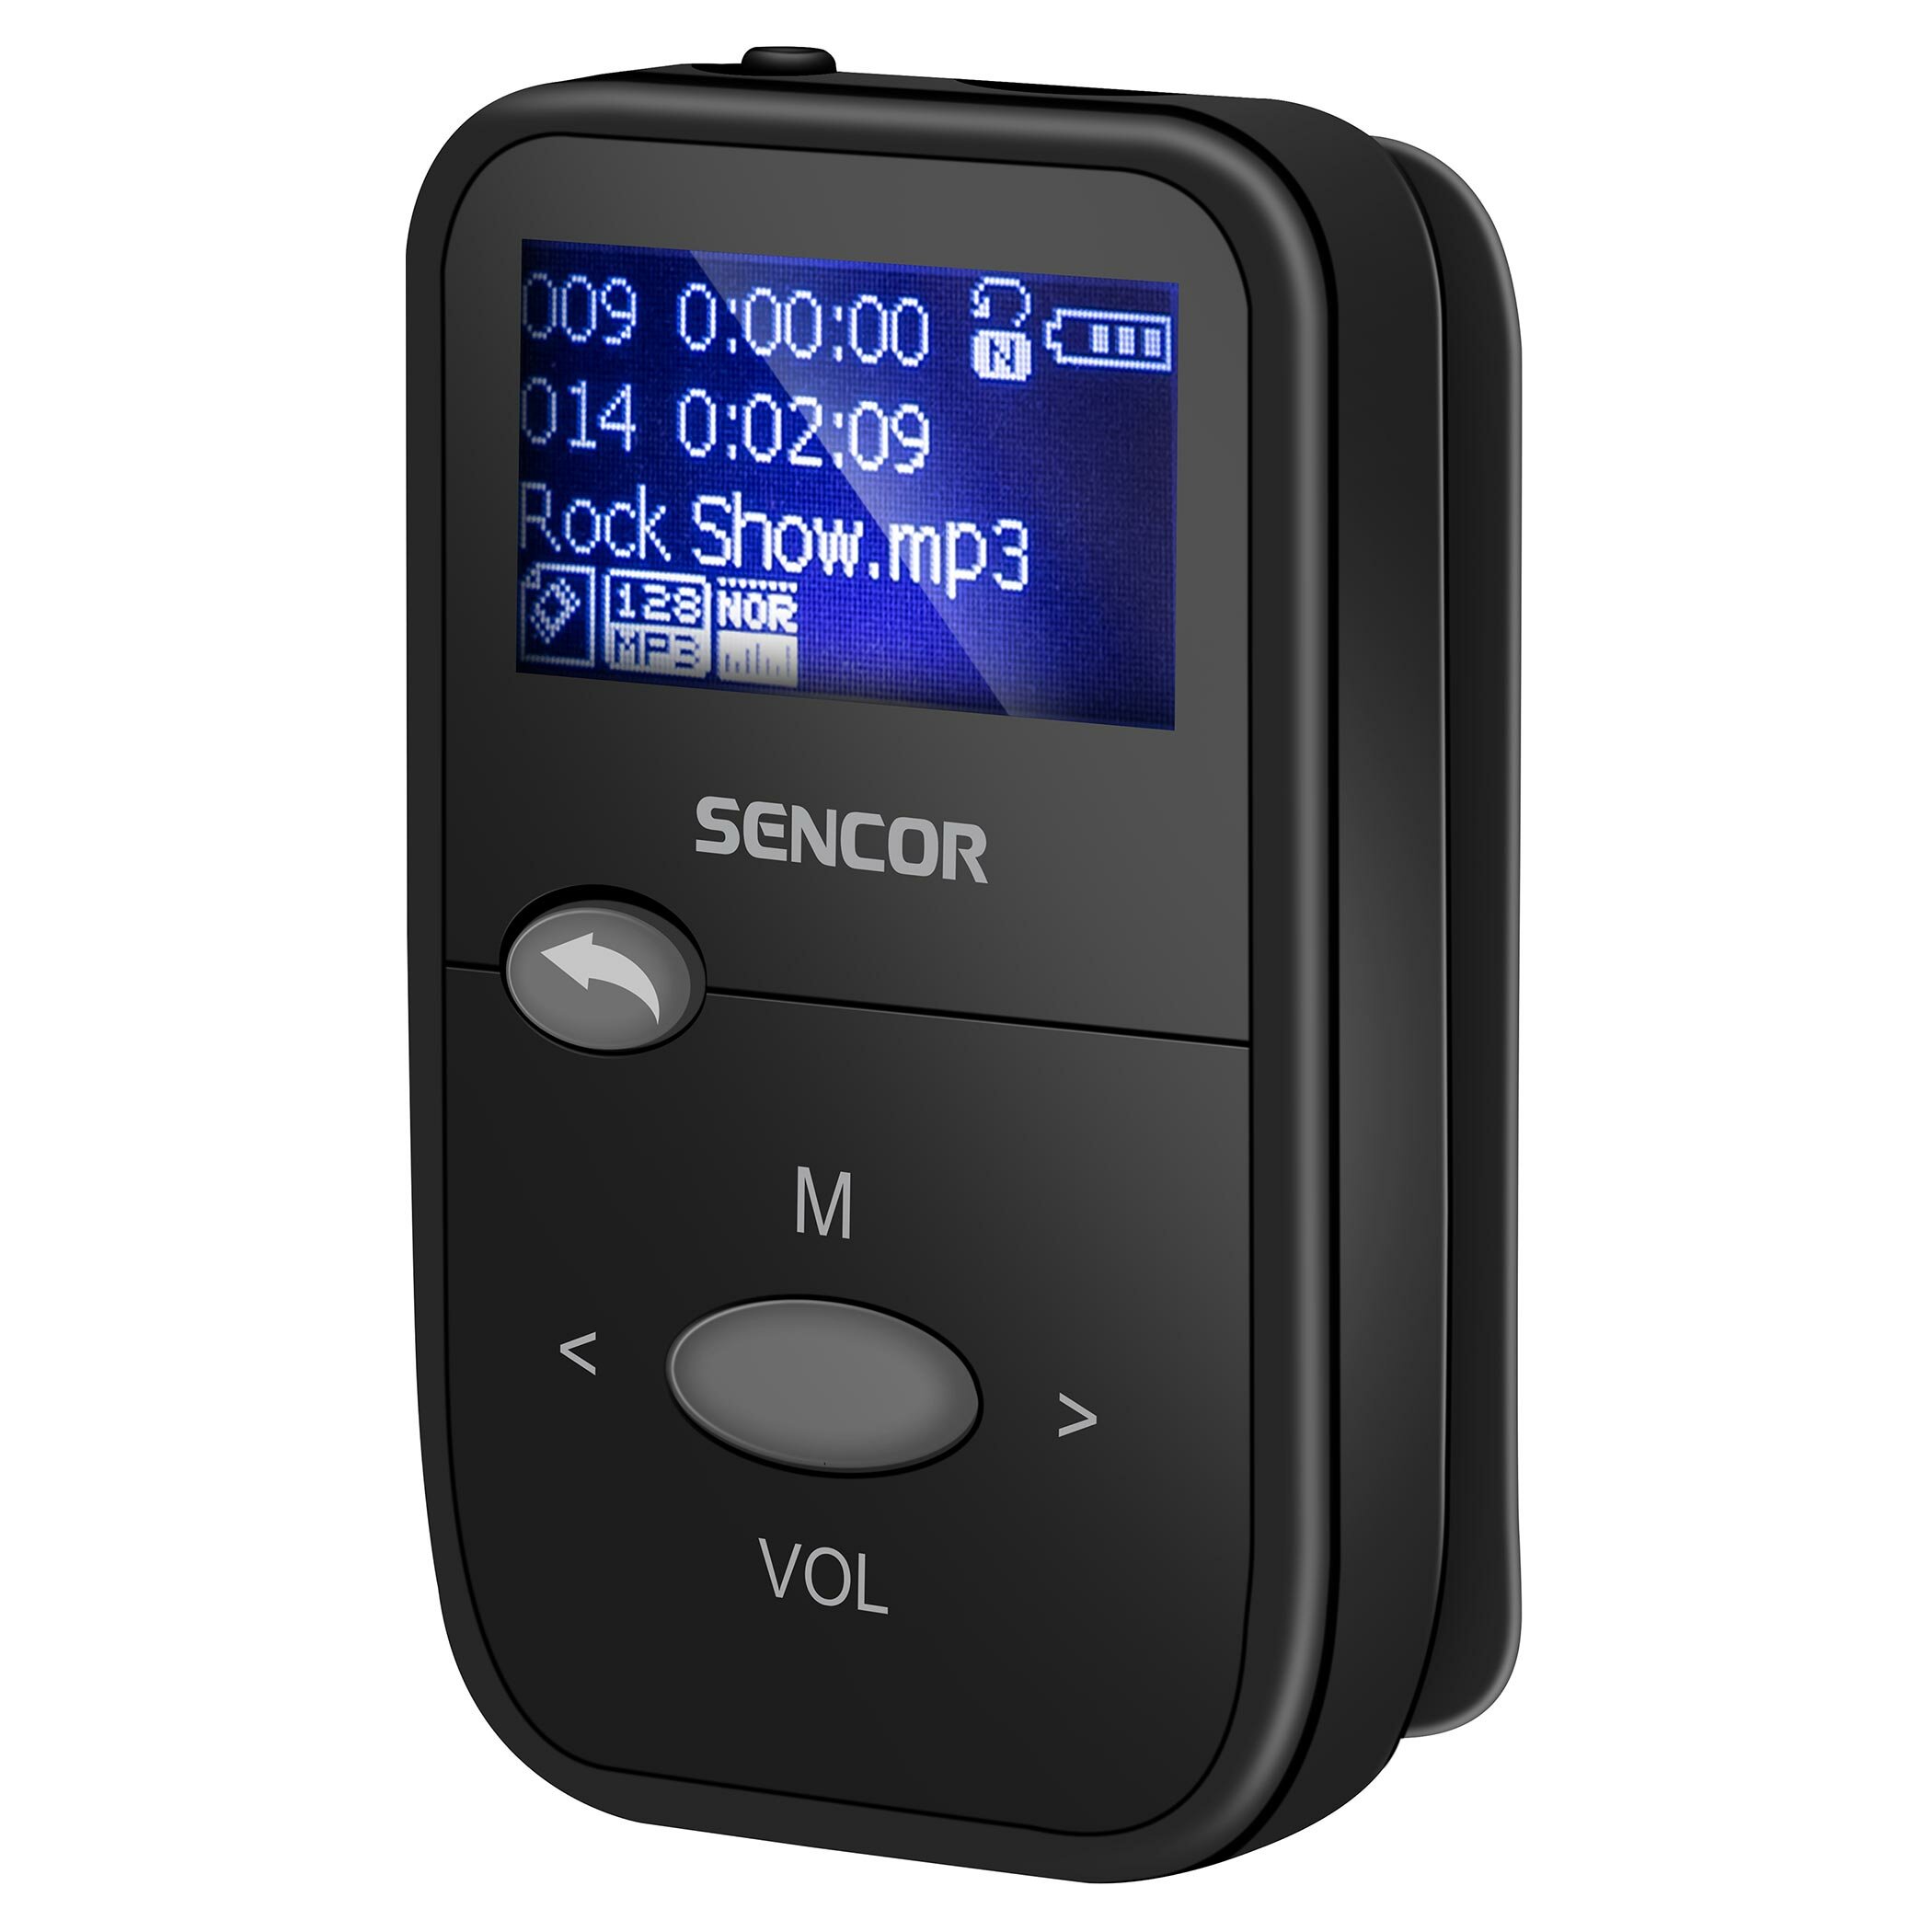 SENCOR SFP 4408 8 GB Czarny Odtwarzacz MP3 - niskie ceny i opinie w Media  Expert